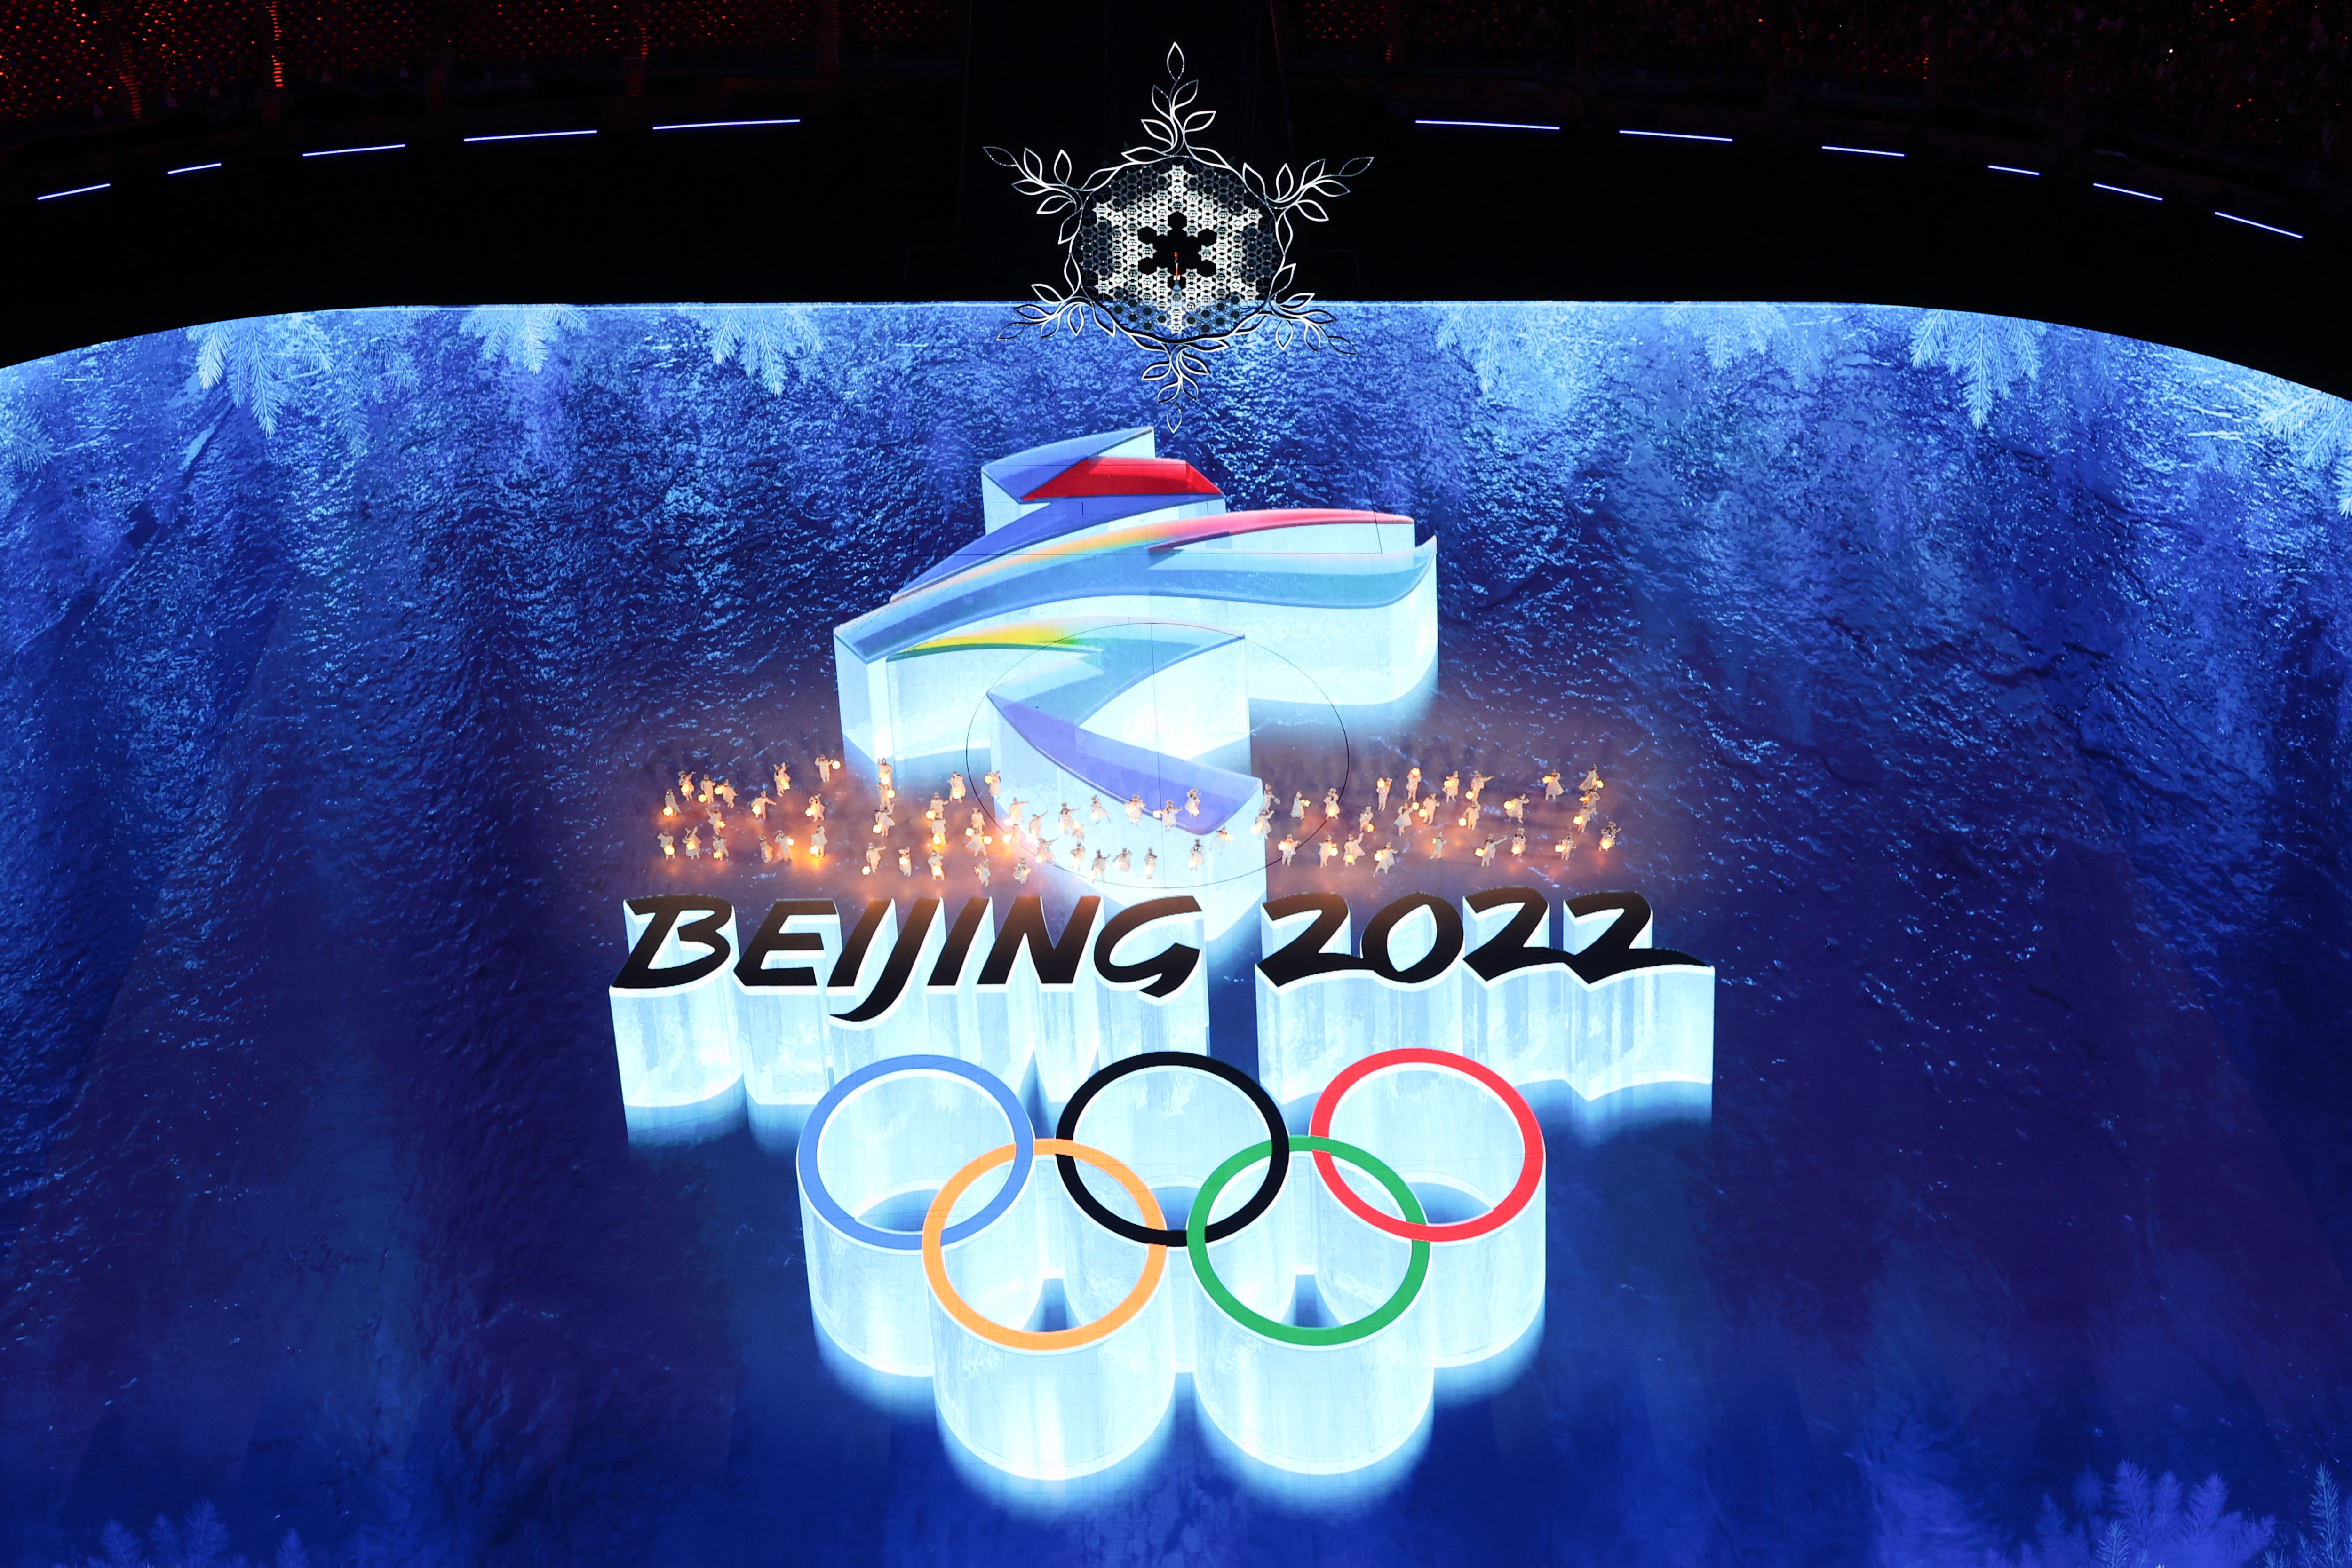 续写一朵雪花的故事,北京冬奥会闭幕式在国家体育场举行